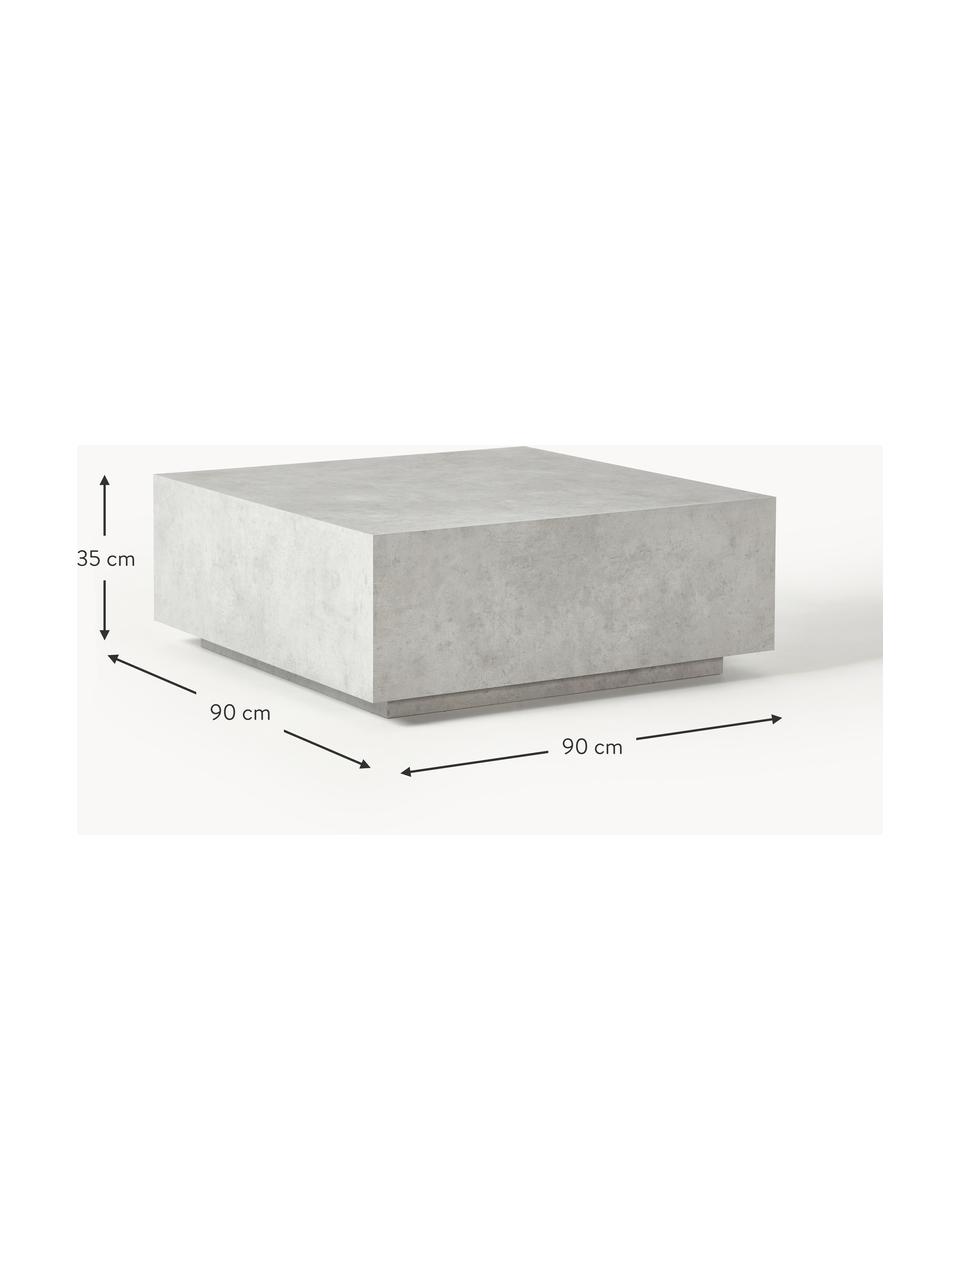 Konferenční stolek v betonovém vzhledu Lesley, Dřevovláknitá deska střední hustoty (MDF) pokrytá melaminovou fólií, mangové dřevo

Tento produkt je vyroben z udržitelných zdrojů dřeva s certifikací FSC®., Šedý betonový vzhled, matný, Š 90 cm, H 90 cm